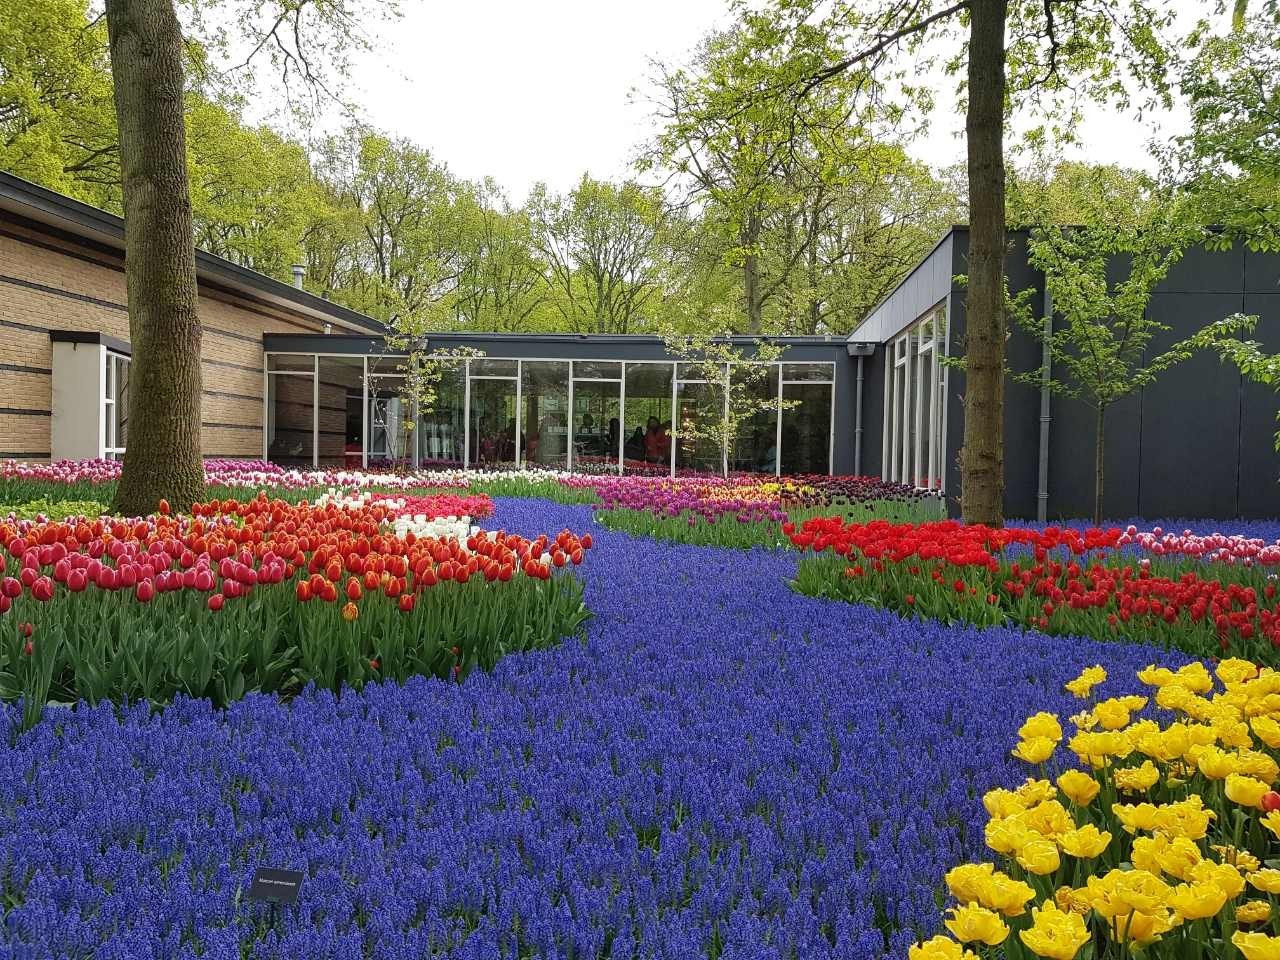 Парк тюльпанов в голландии